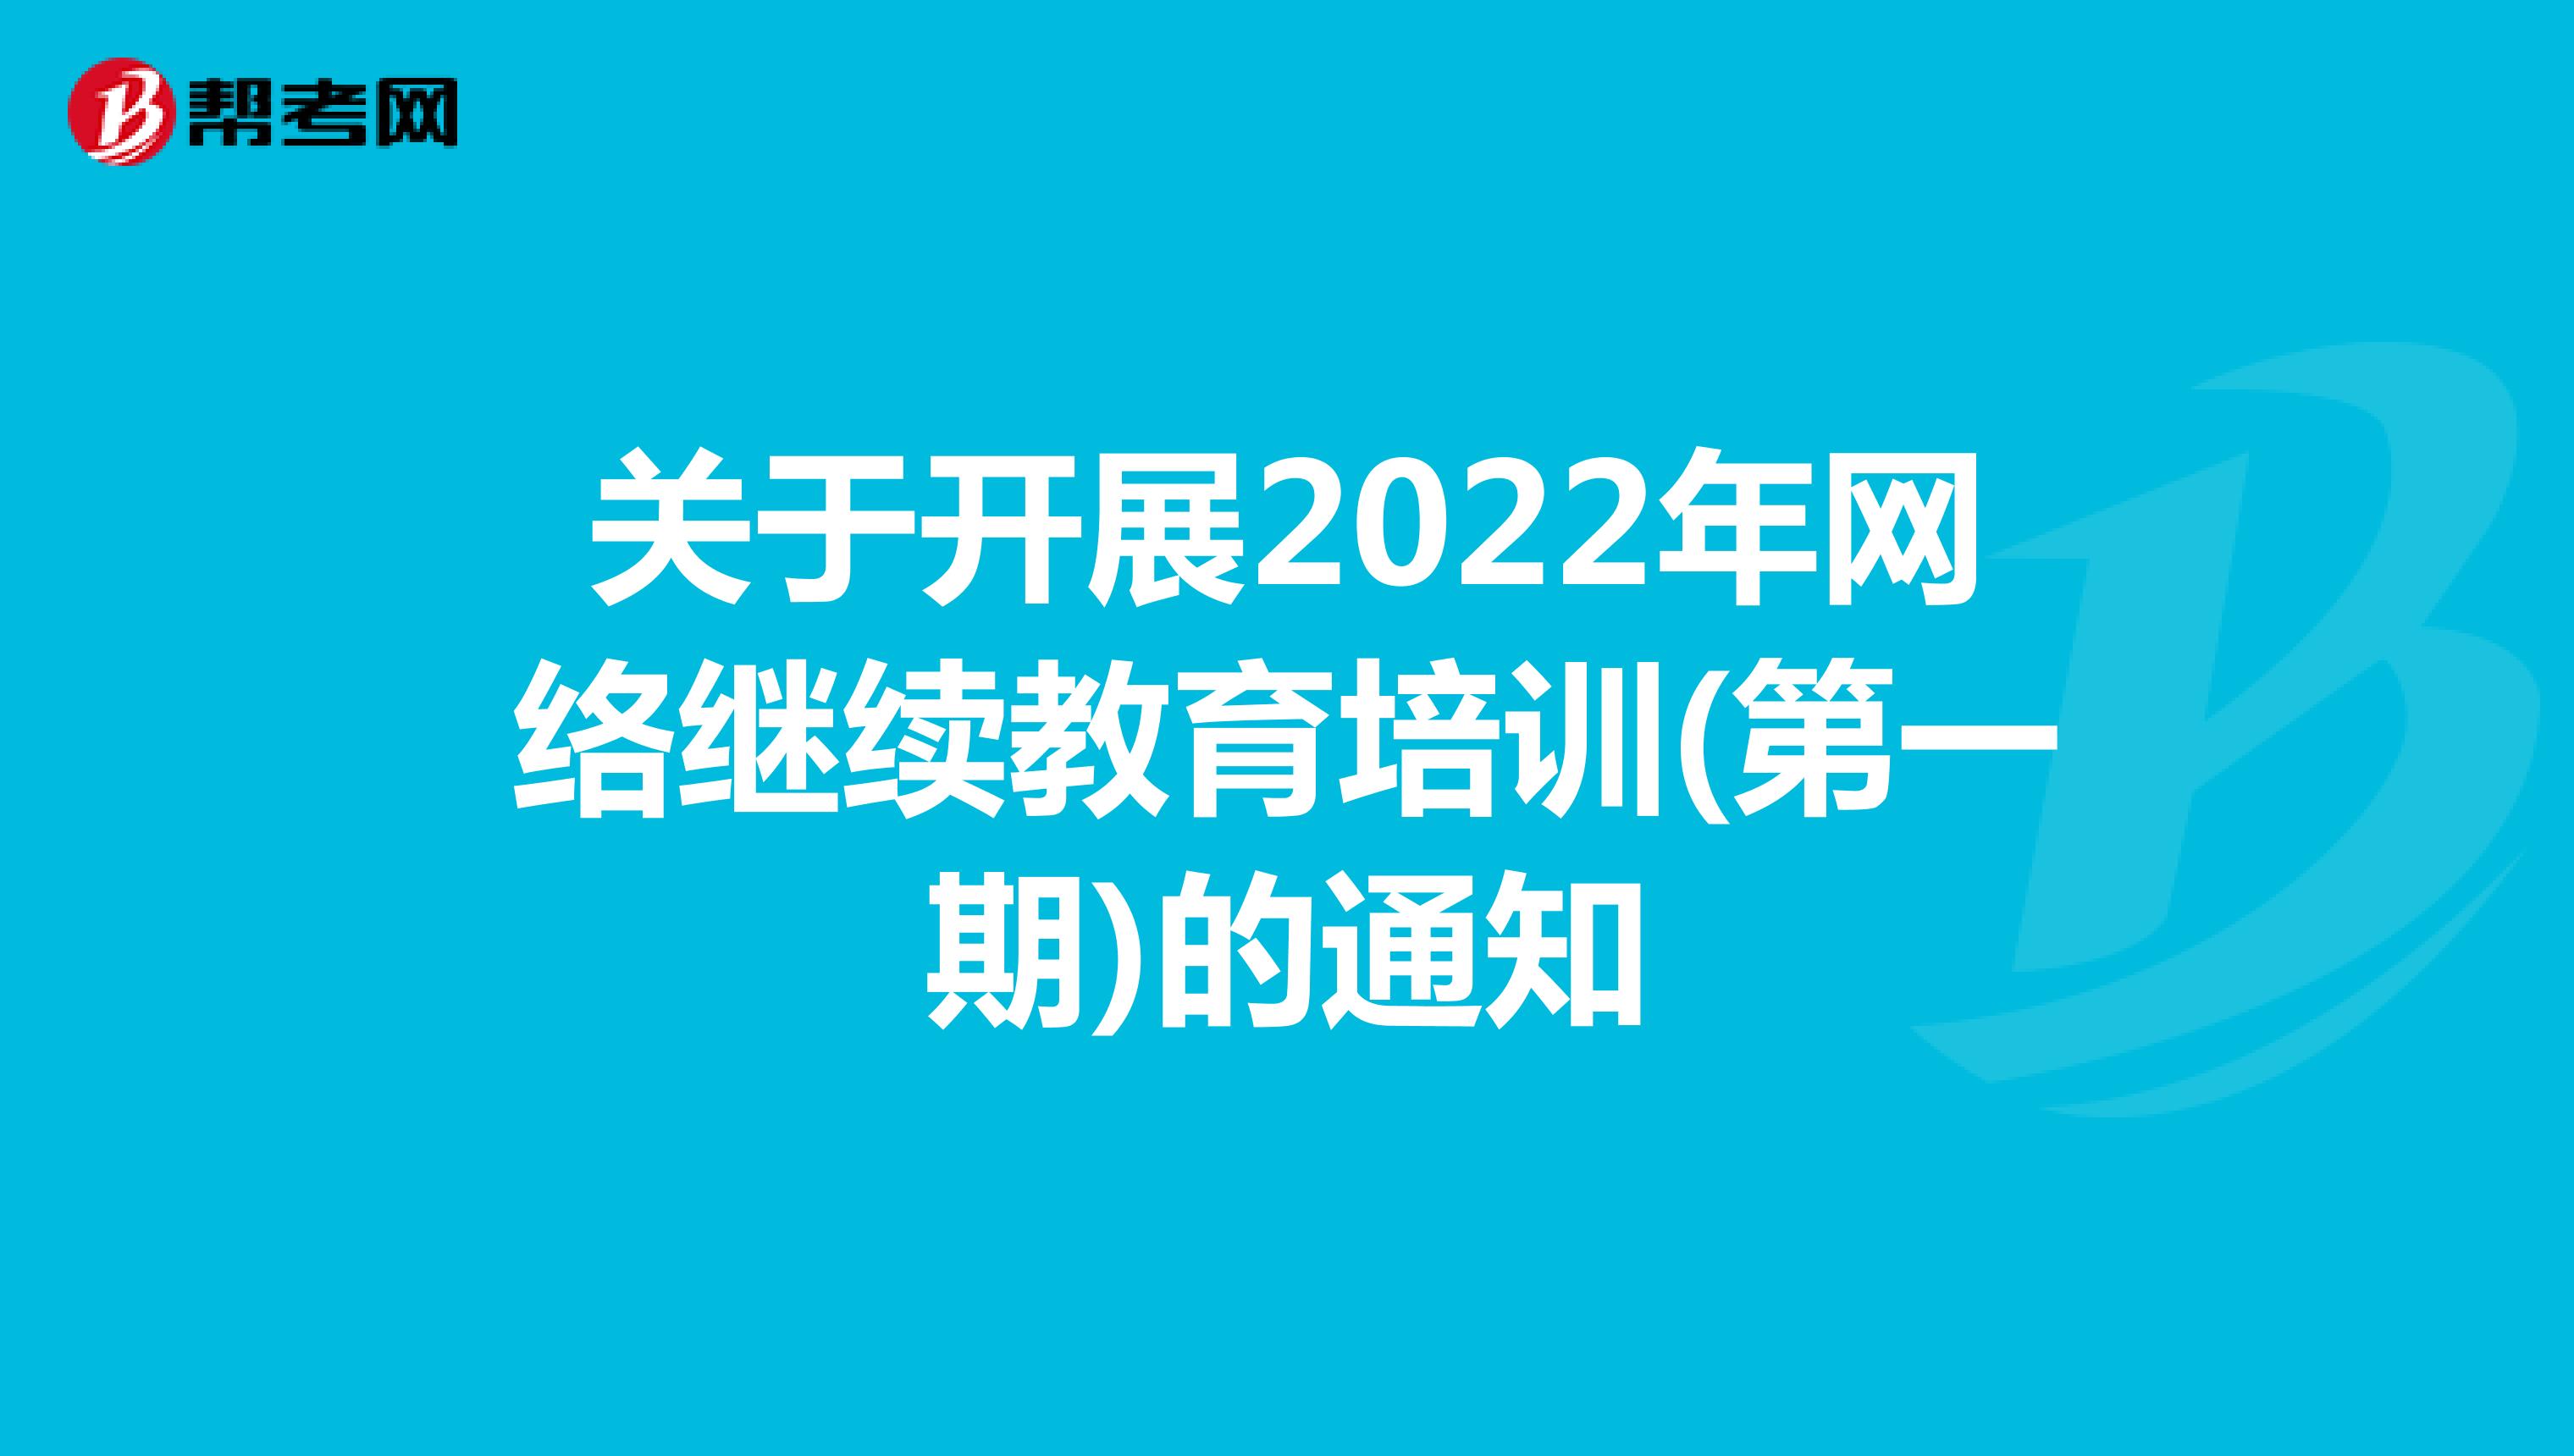 关于开展2022年网络继续教育培训(第一期)的通知